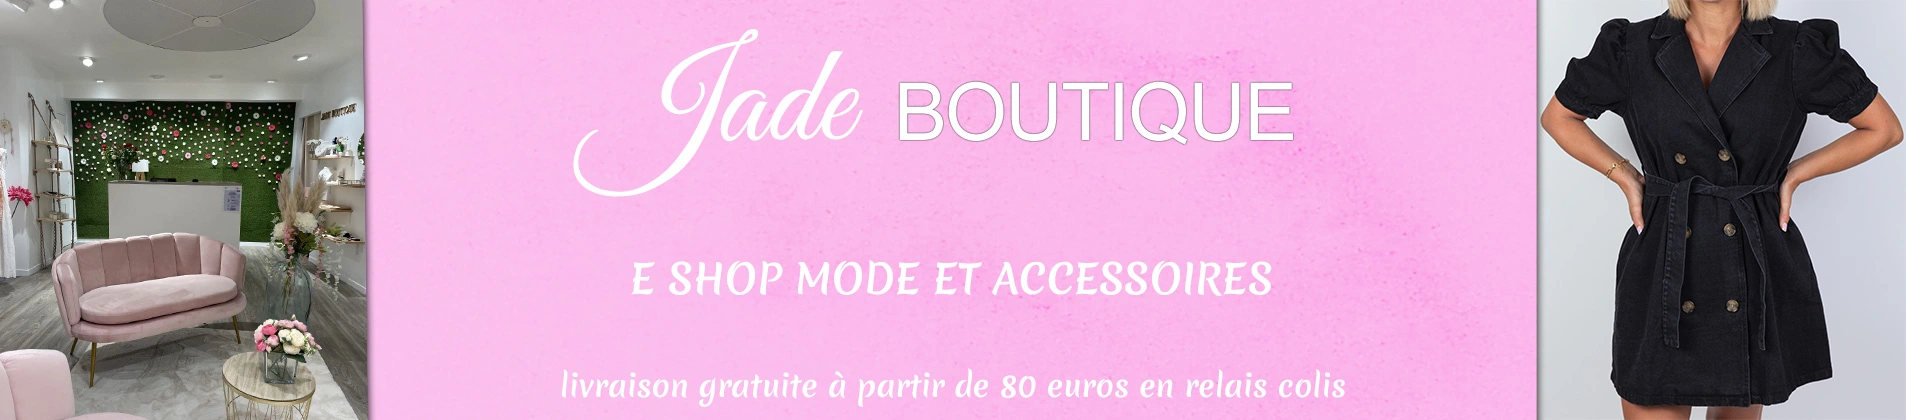 E-shop mode et accessoires, livraison gratuite à partir de 80 euros